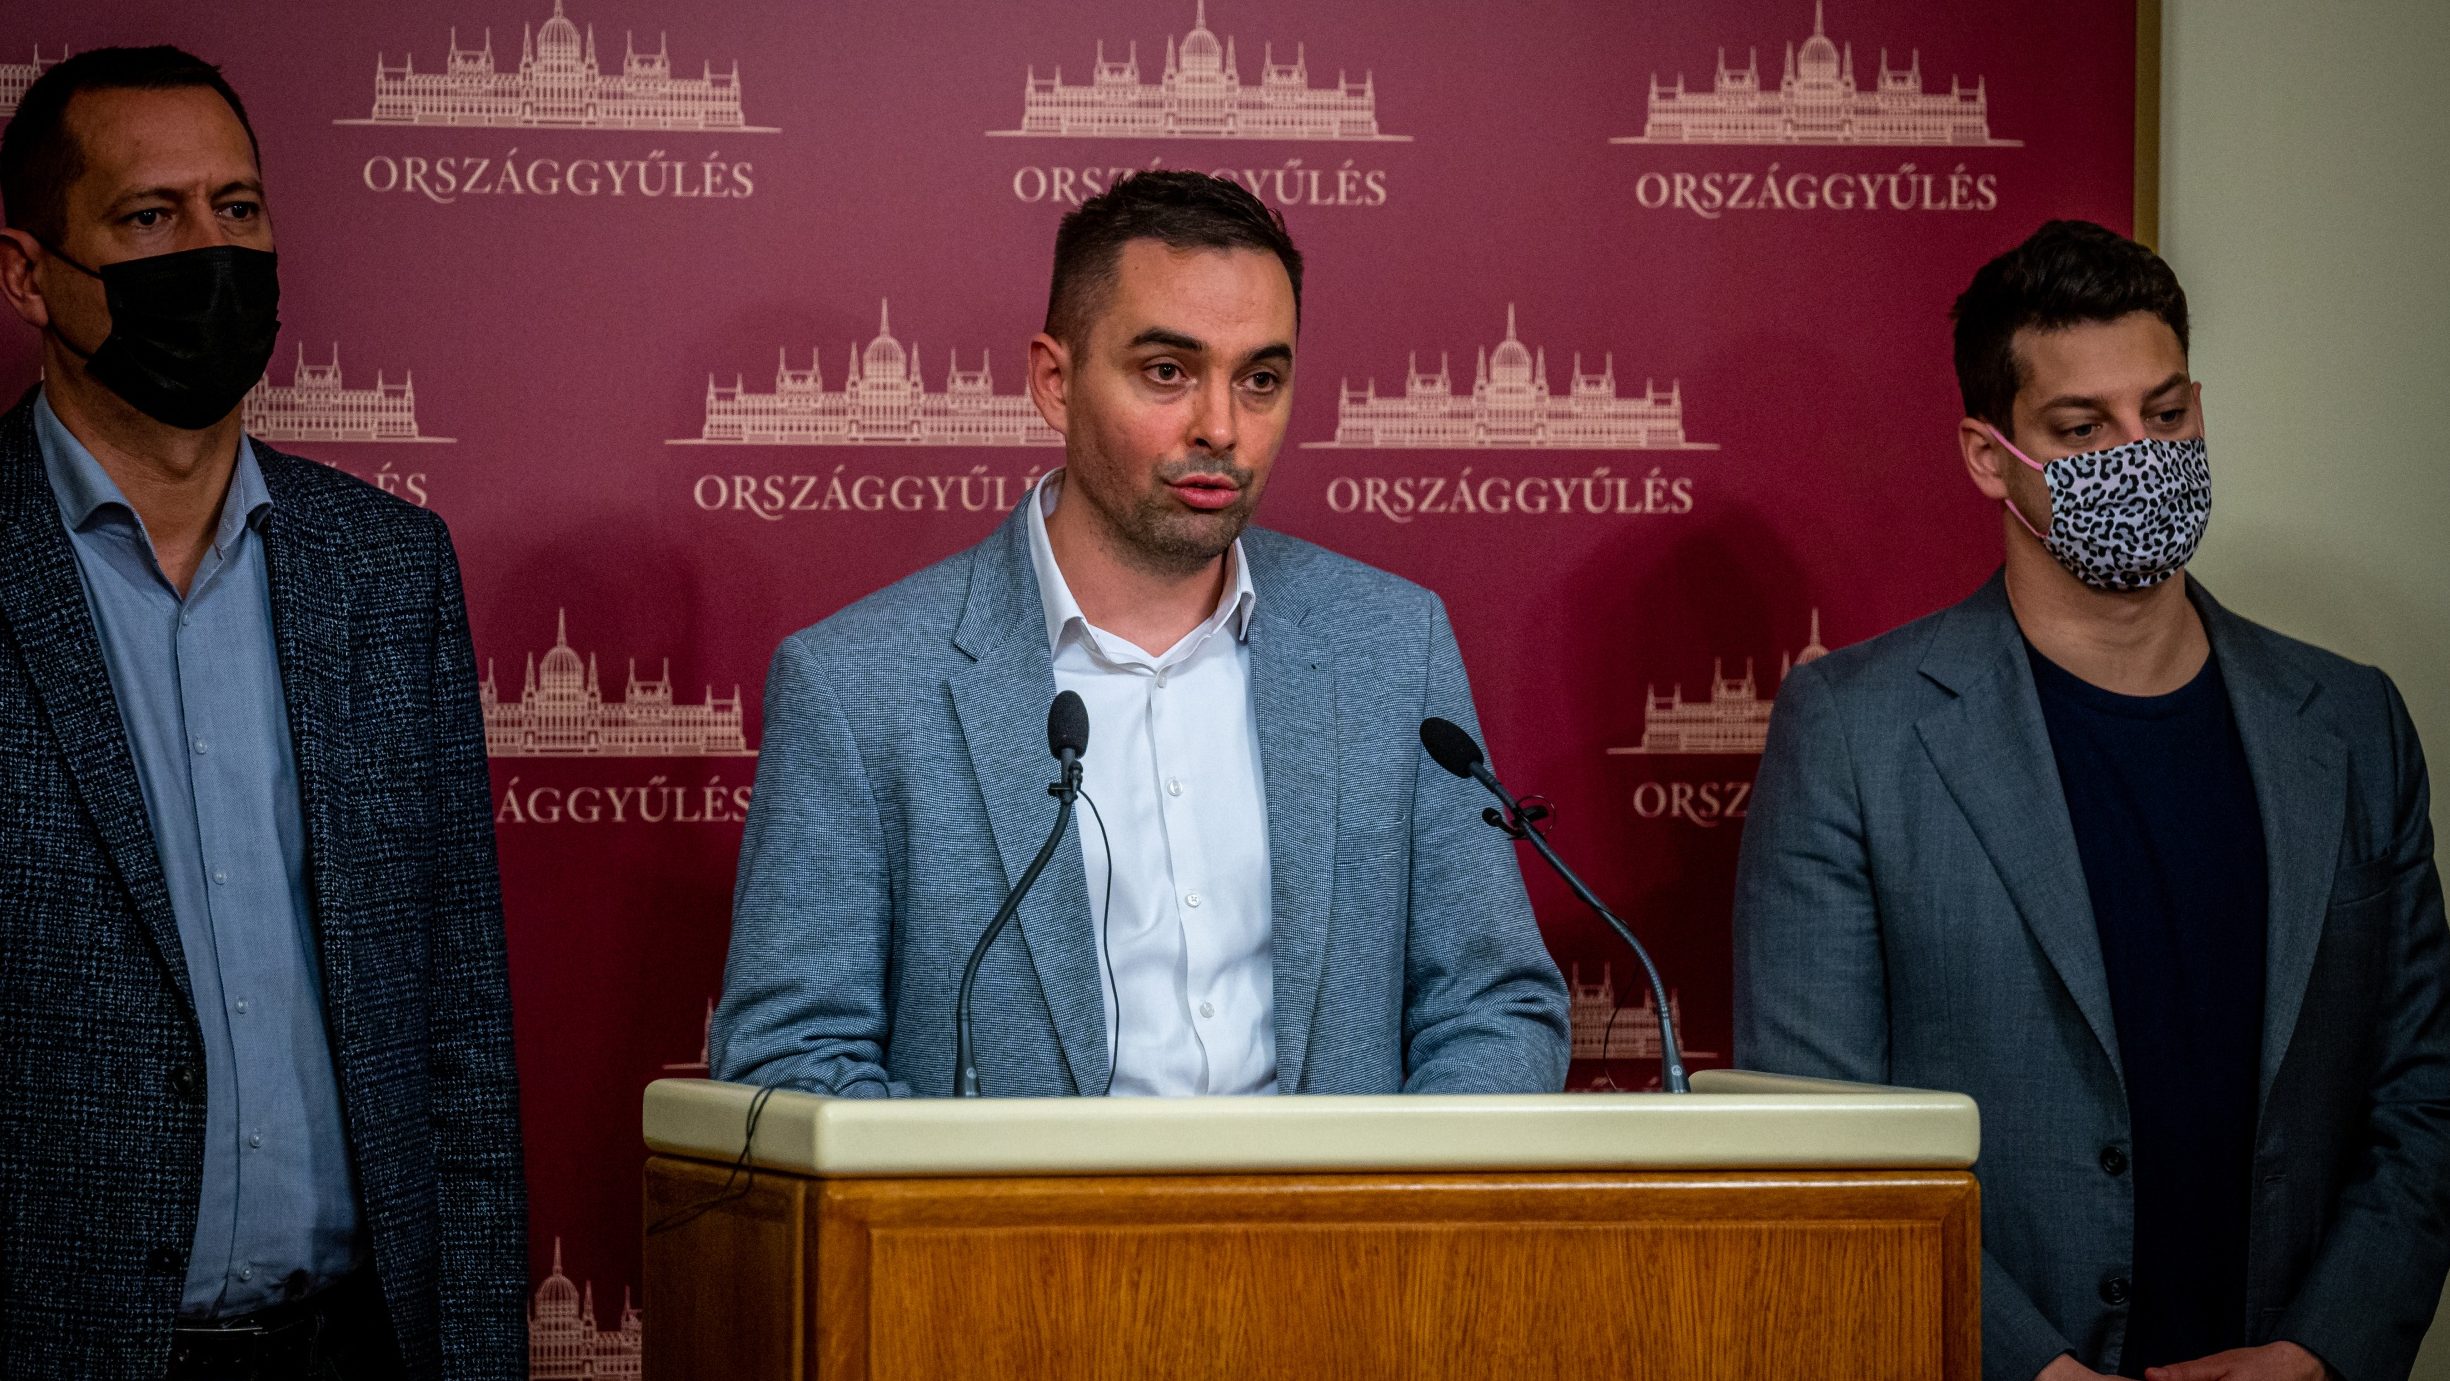 Stummer János: A világ végezetéig titkos lesz a Pegasus-ügy, ha a Fideszen múlik